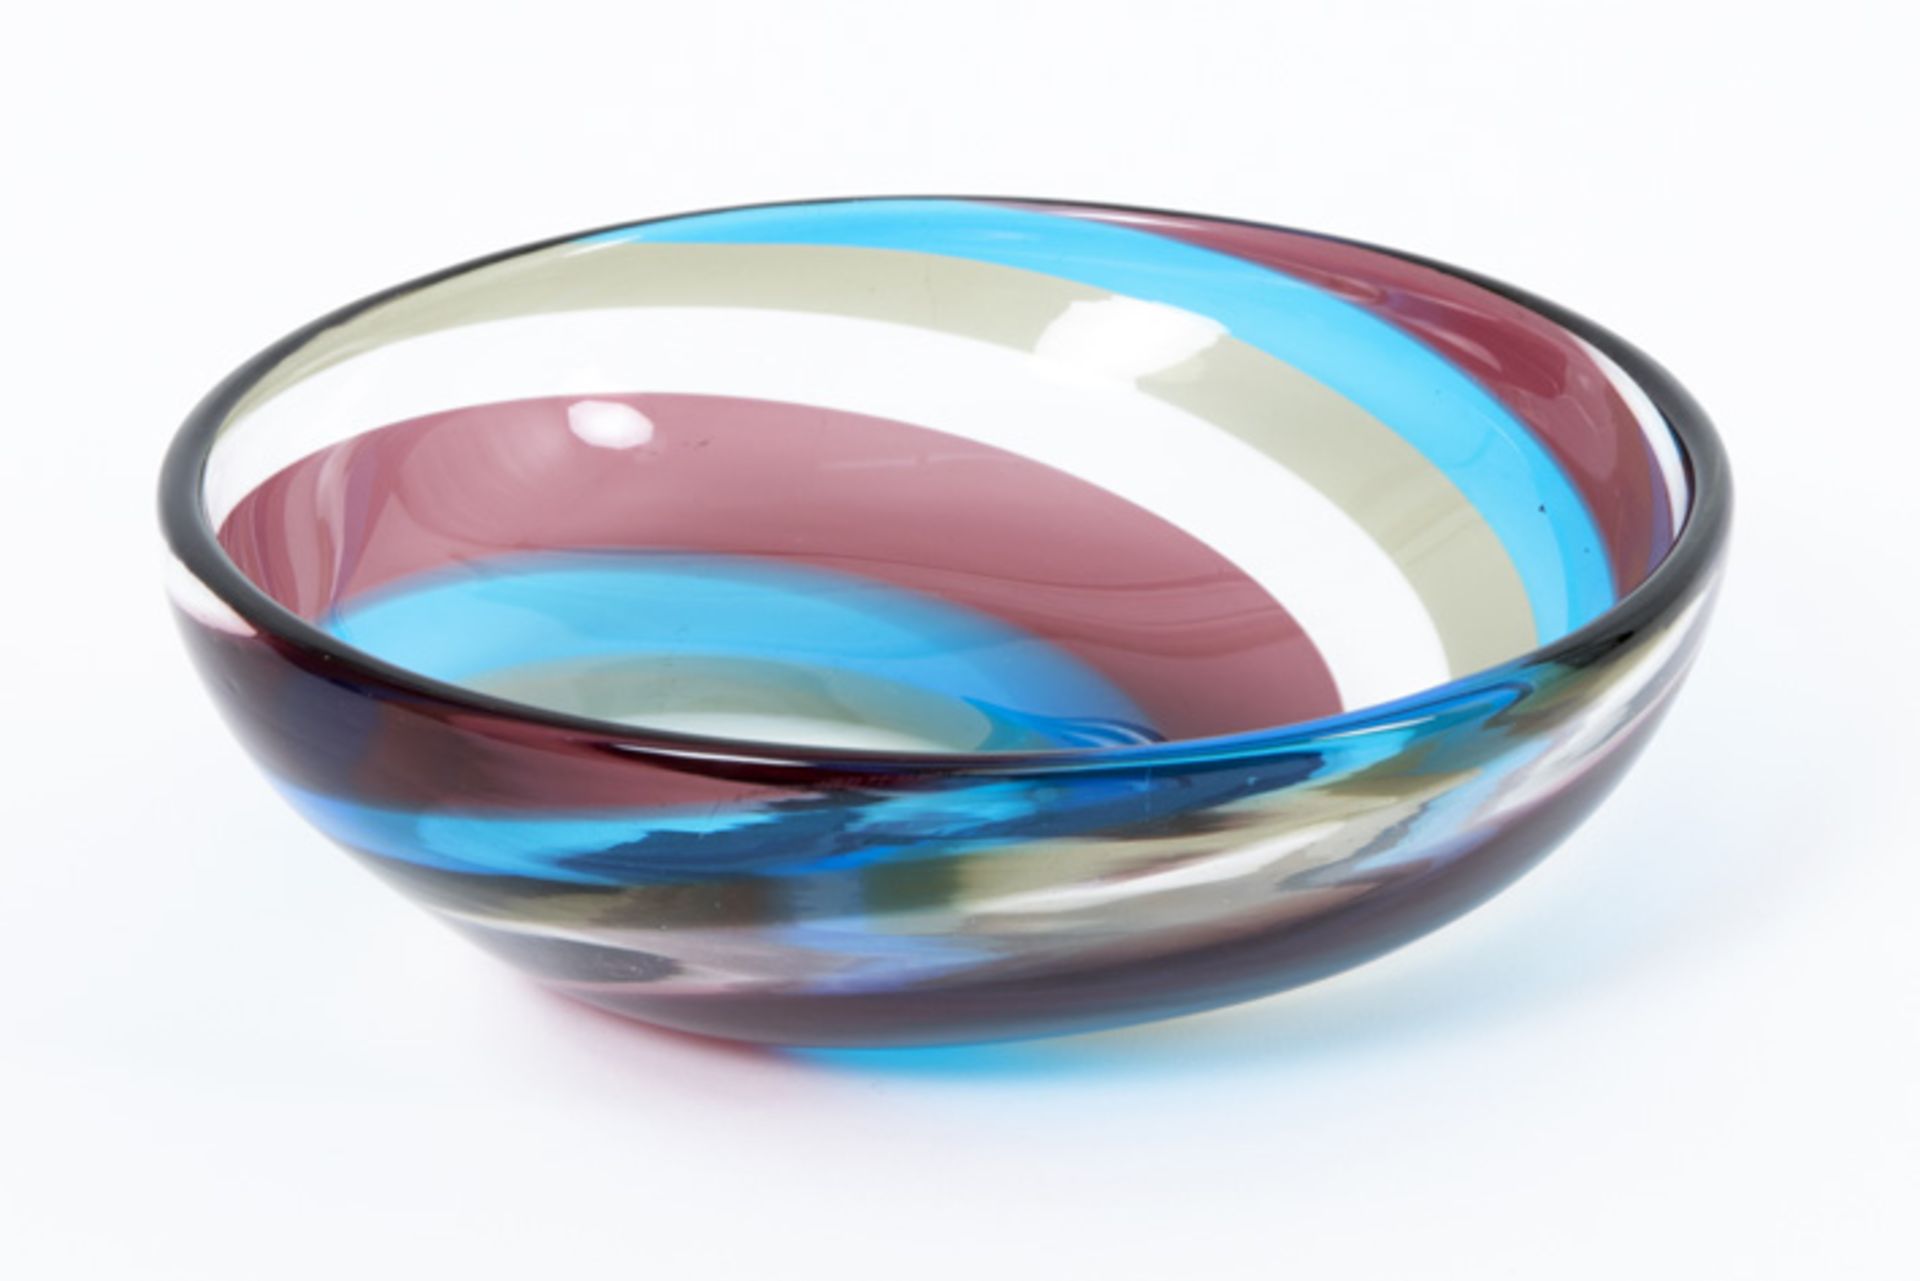 Massimo Vignelli "Spicchi" bowl in purple, turquoize, clear and grey glas - marked Venini Murano - Image 3 of 4